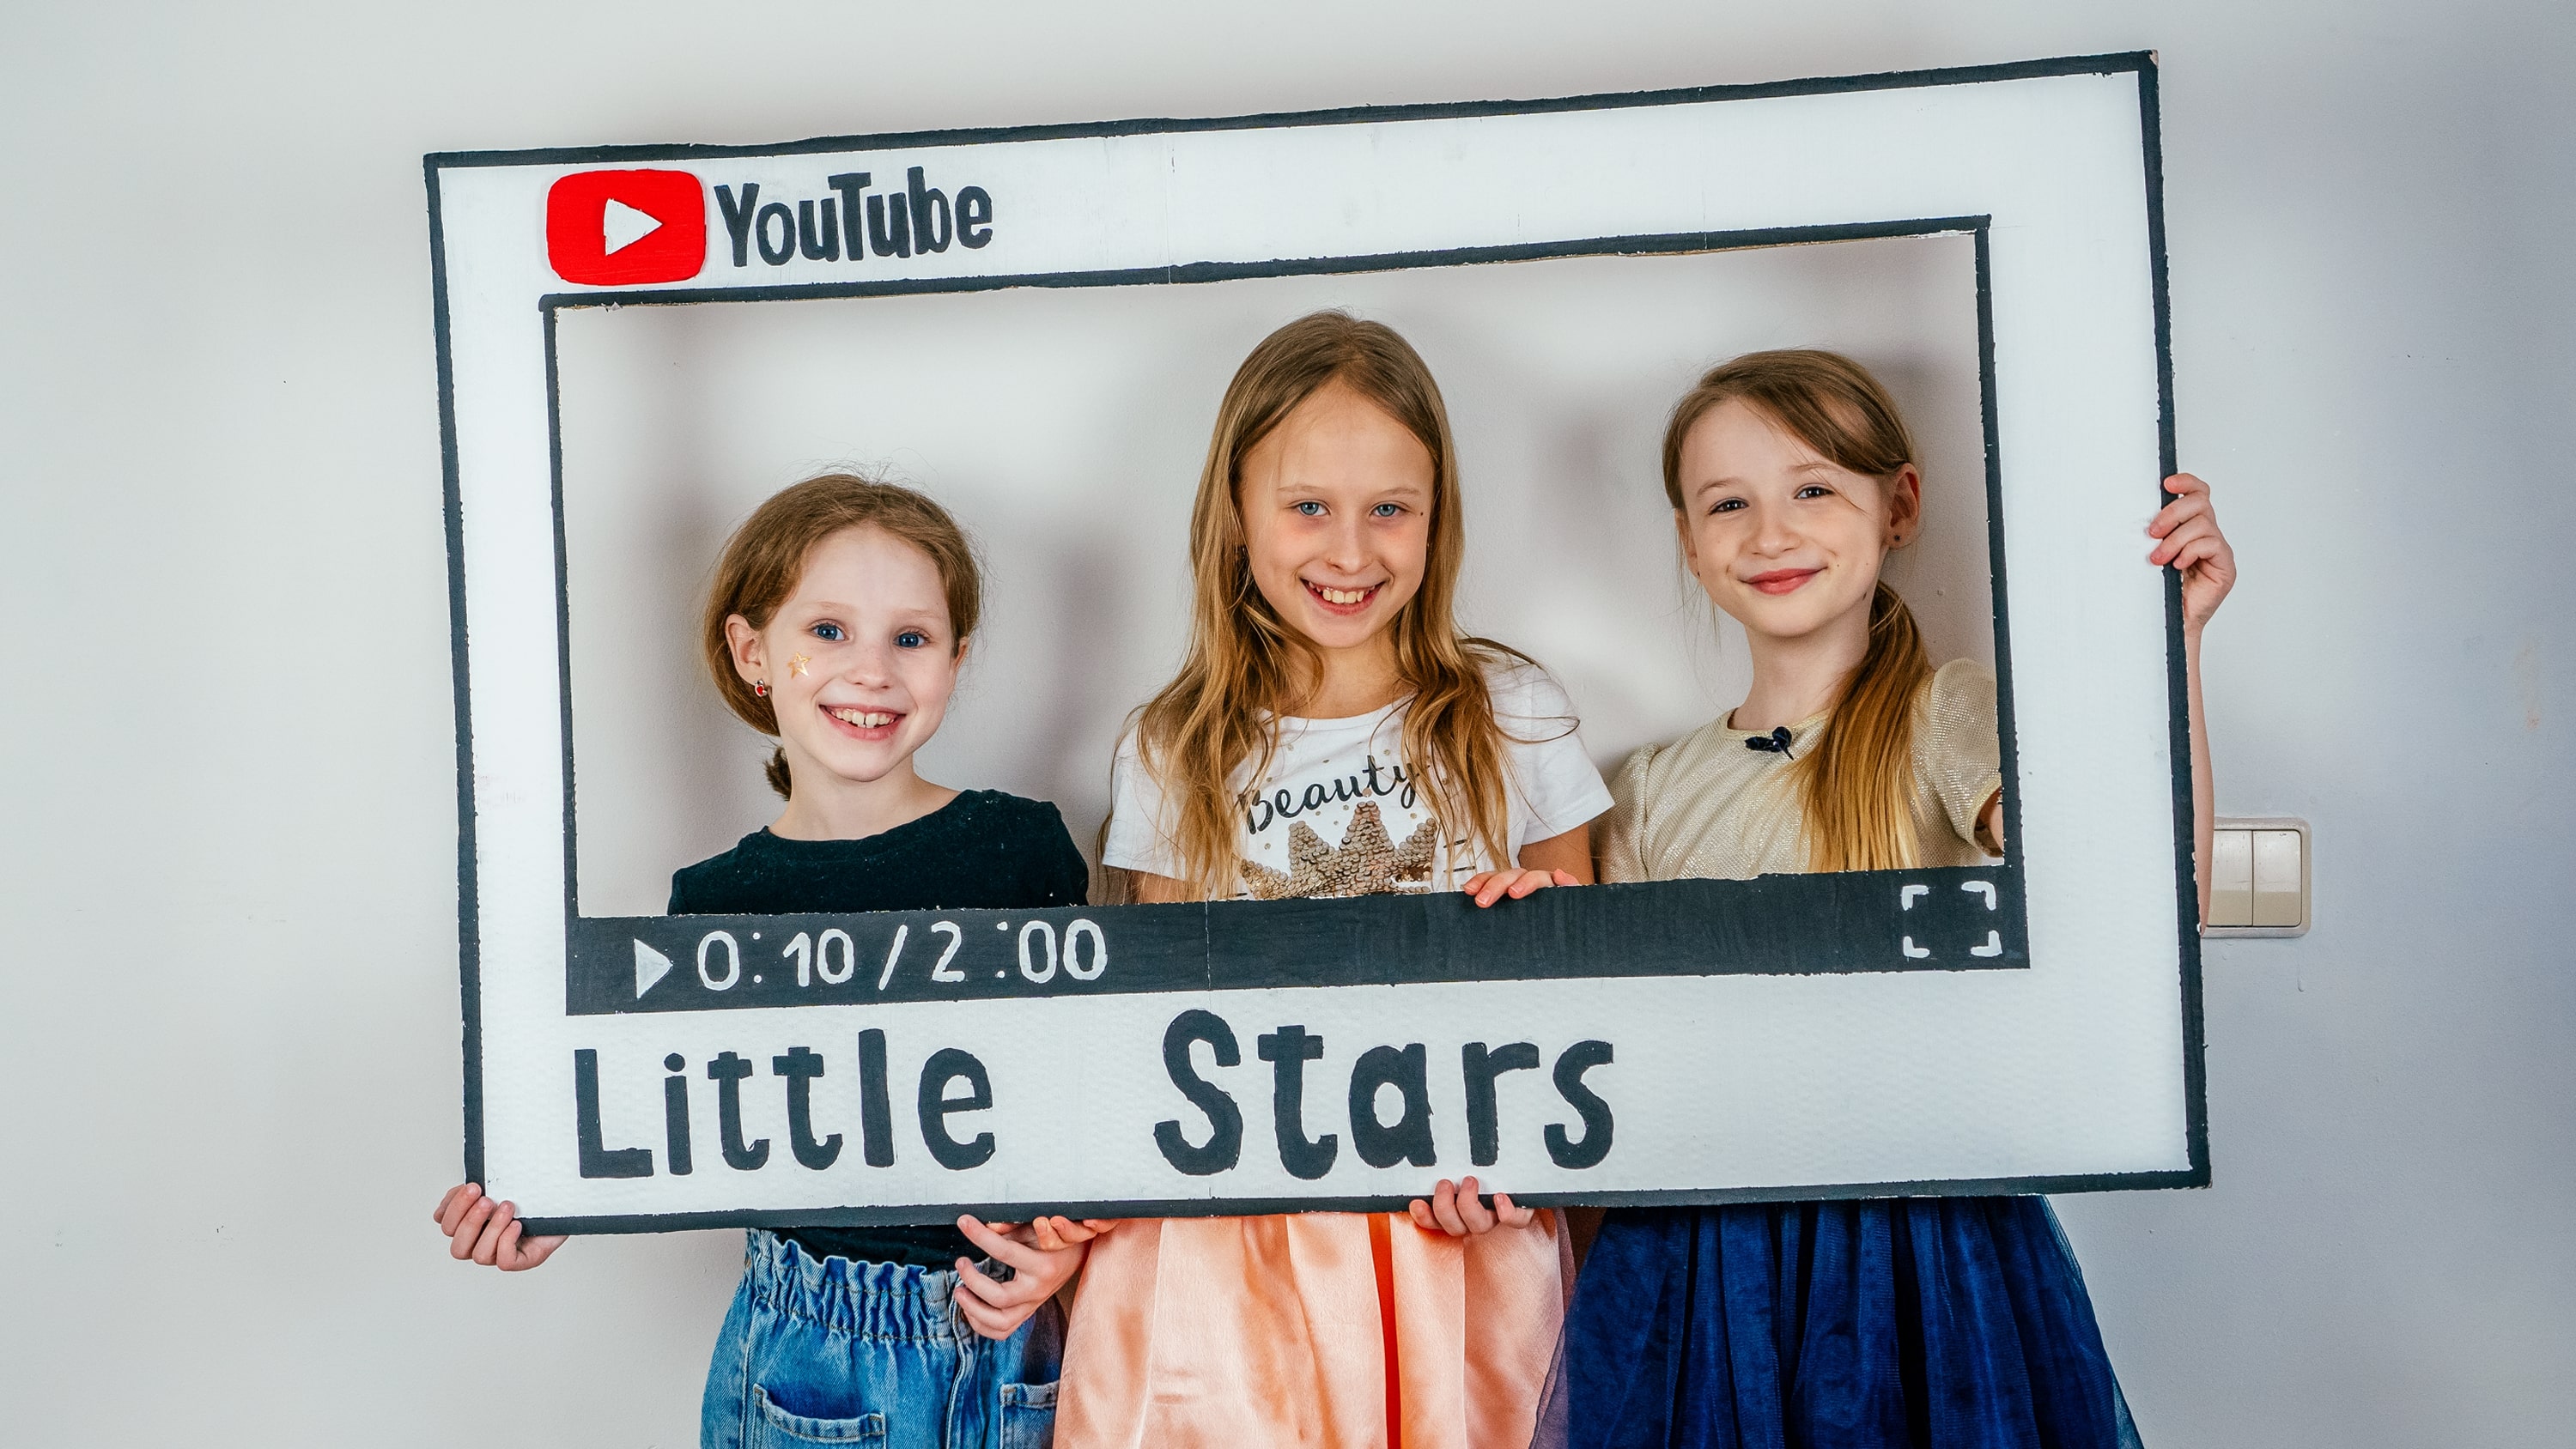 "Творческие каникулы для девочек Little Stars" - обучение